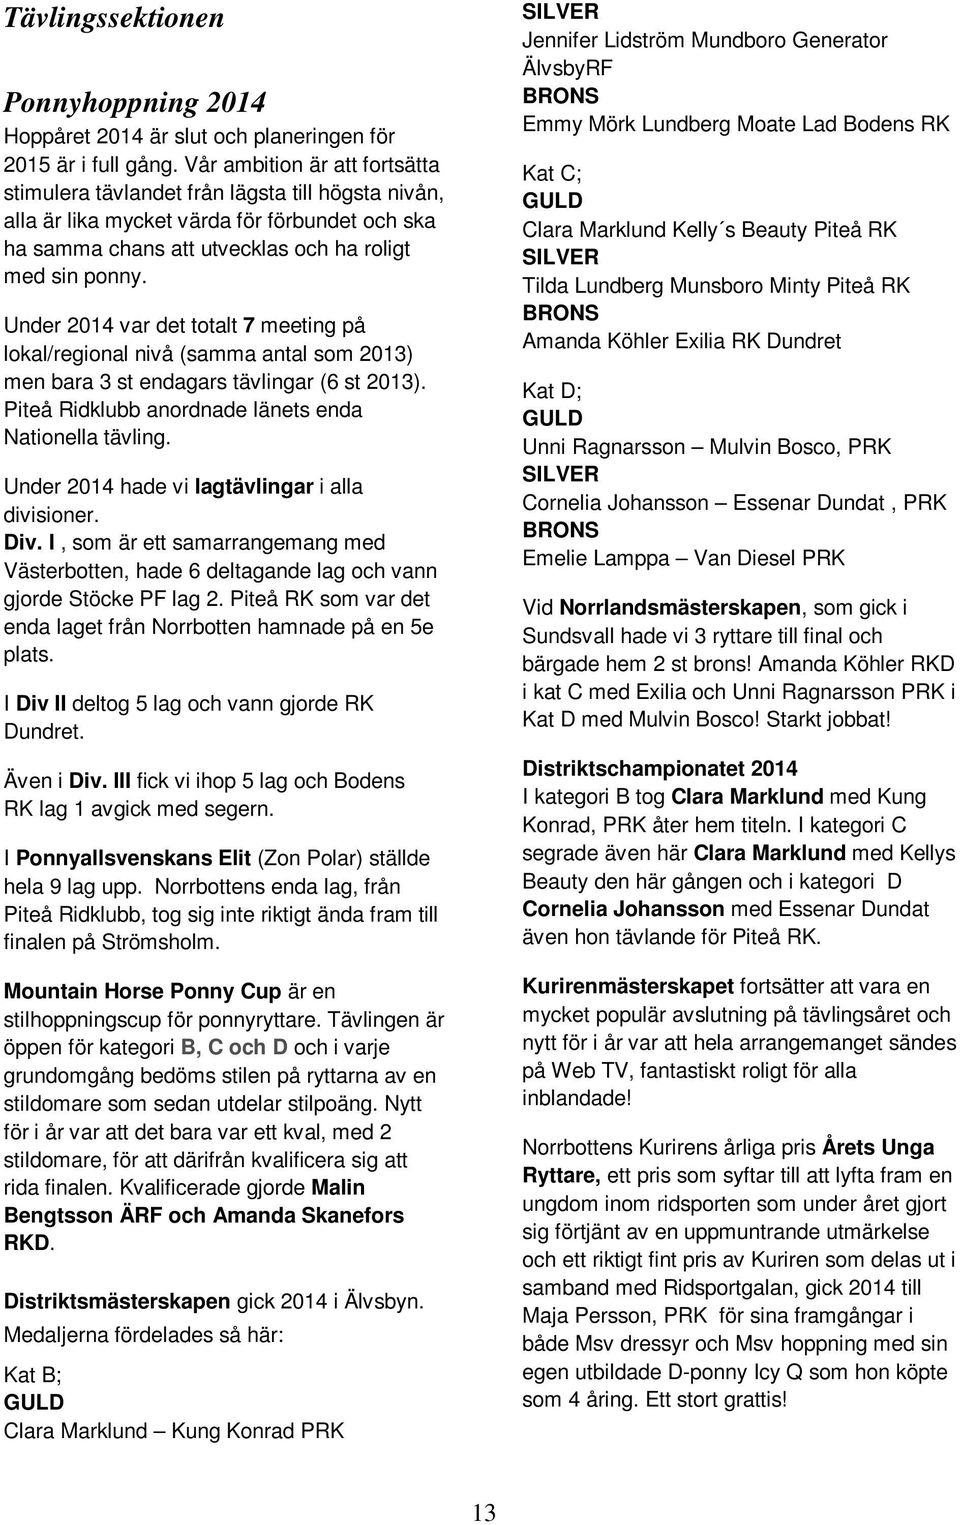 Under 2014 var det totalt 7 meeting på lokal/regional nivå (samma antal som 2013) men bara 3 st endagars tävlingar (6 st 2013). Piteå Ridklubb anordnade länets enda Nationella tävling.